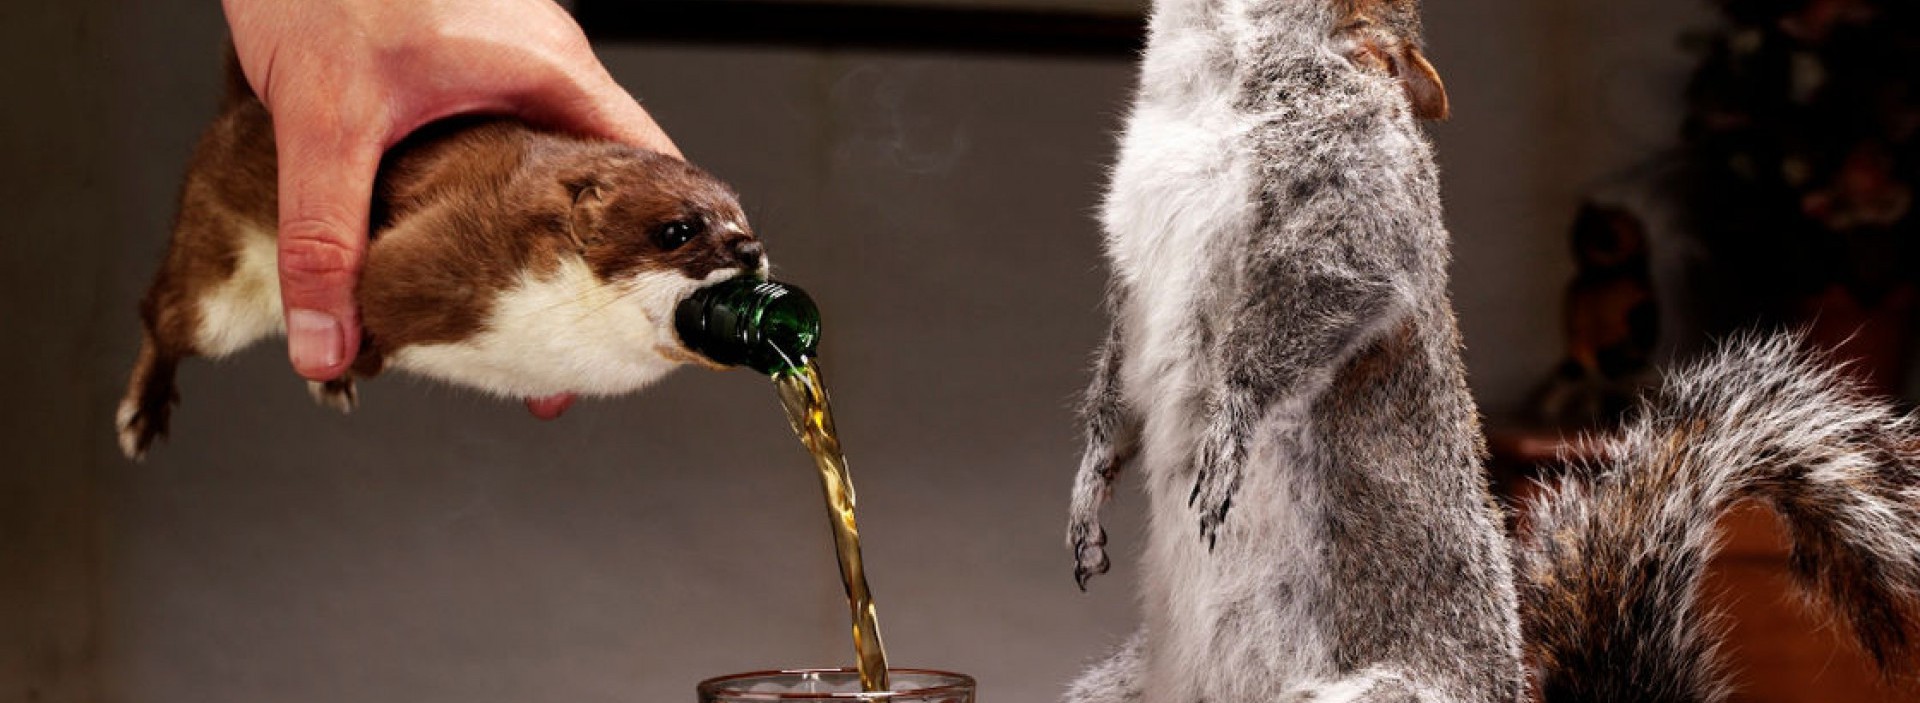 Alvo do movimento em defesa dos animais, com toda razão, a cerveja escocesa Brewdog end of history vem com a garrafa encoberta por animais empalhados. Garrafa custa 500 libras.   (Foto: Divulgação)